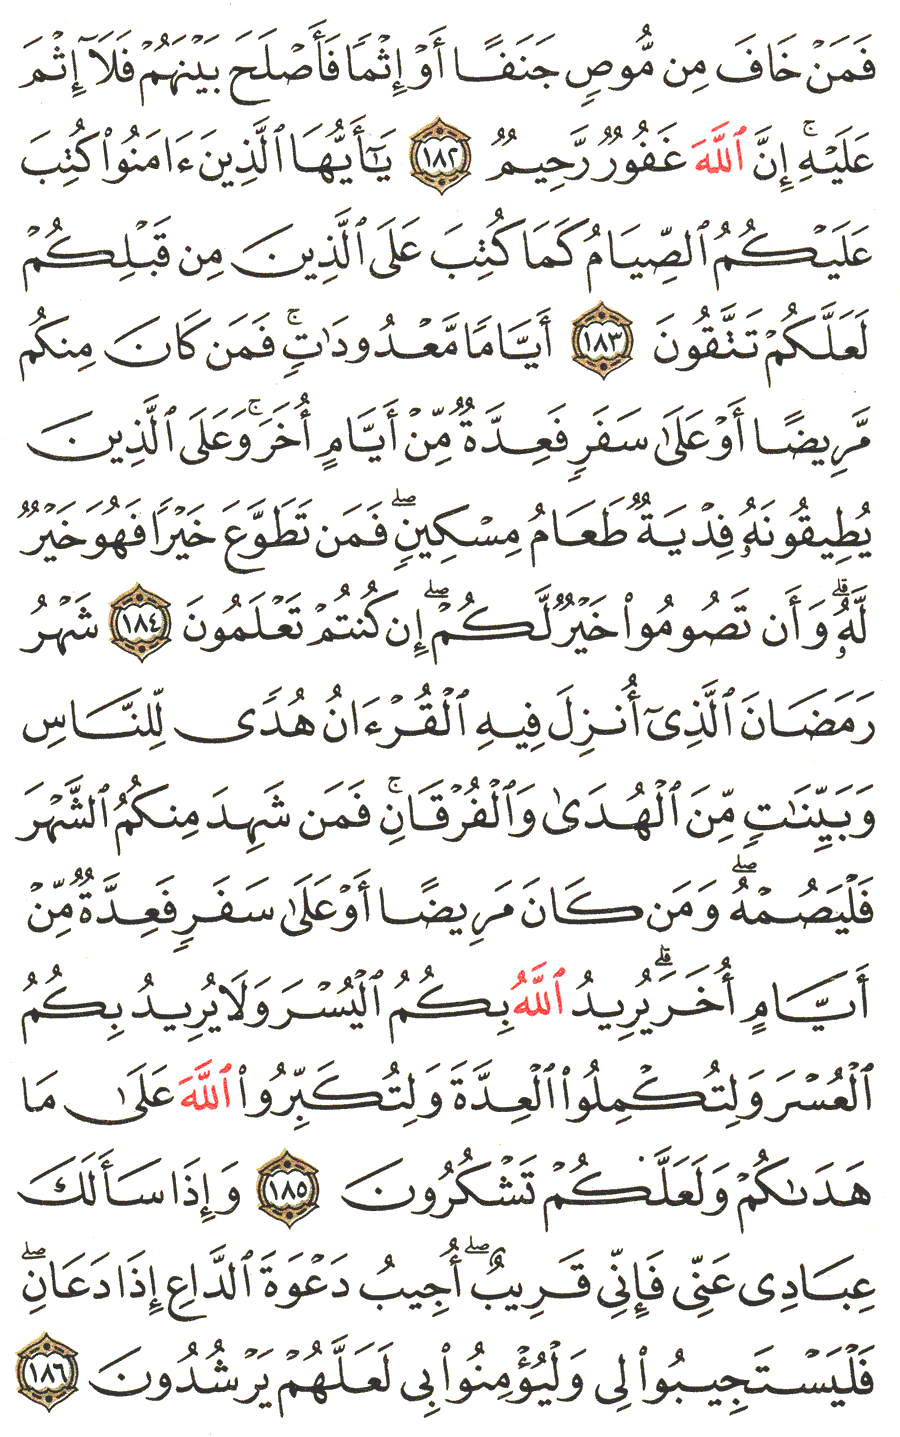 الصفحة رقم  28 من القرآن الكريم مكتوبة من المصحف